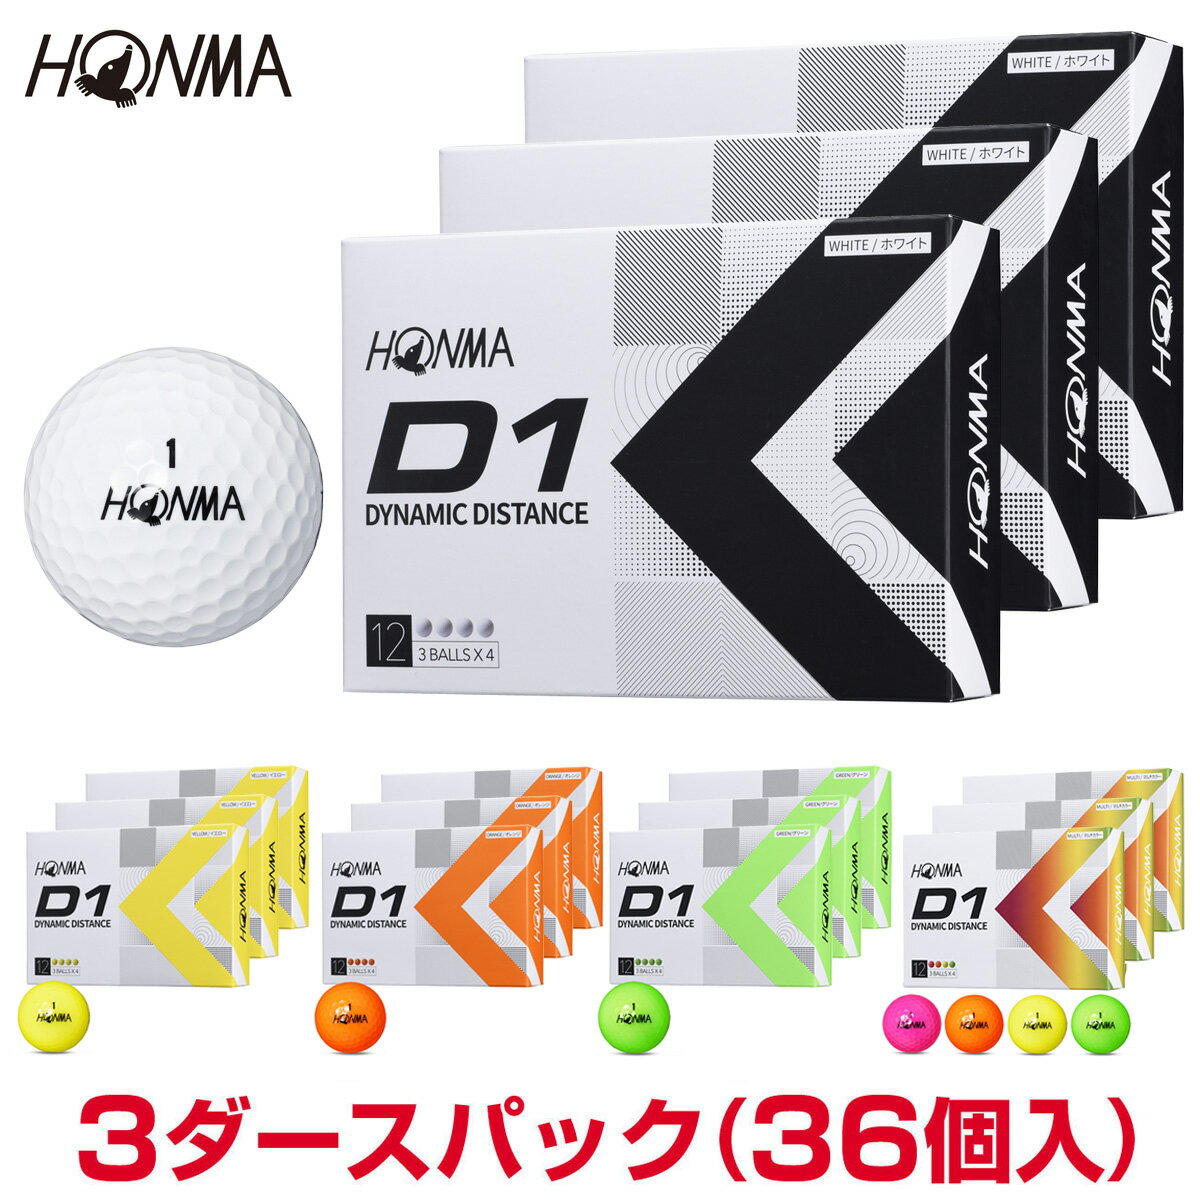 HONMA GOLF(本間ゴルフ)日本正規品 ホンマ D1 ゴルフボール3ダースパック(36個入) 2022新製品 「BT2201」 【あす楽対応】